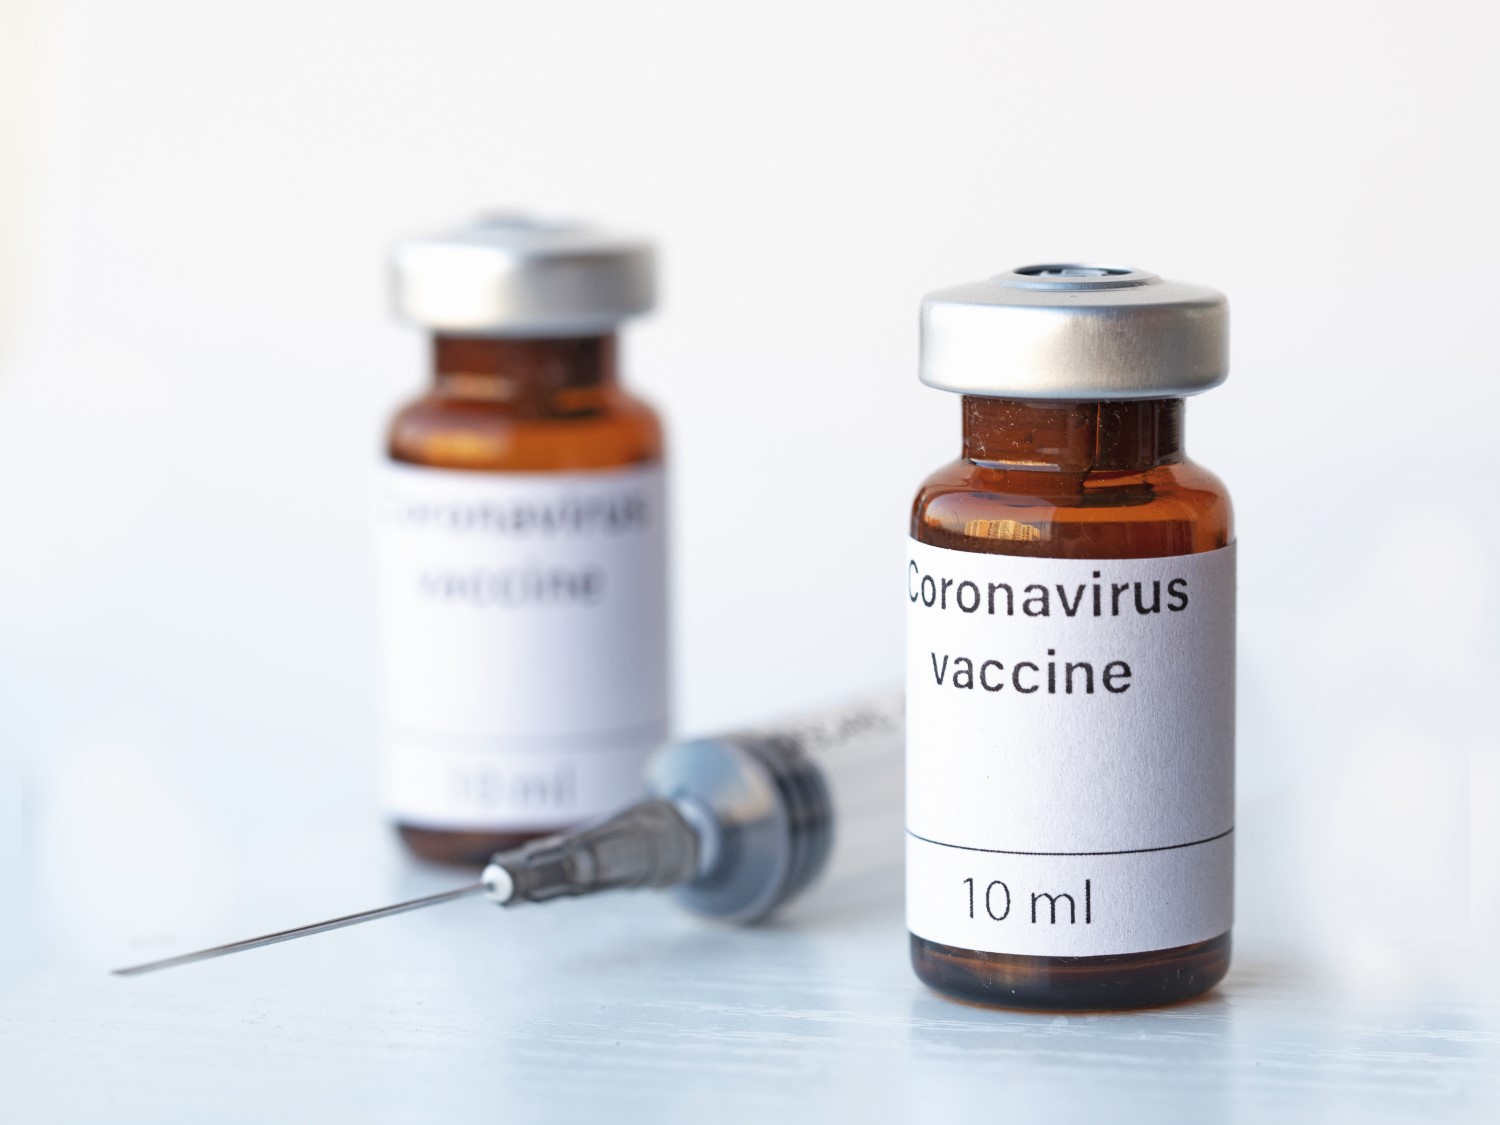 Cei care au avut Covid-19 sunt sfătuiți să se vaccineze cu ambele doze